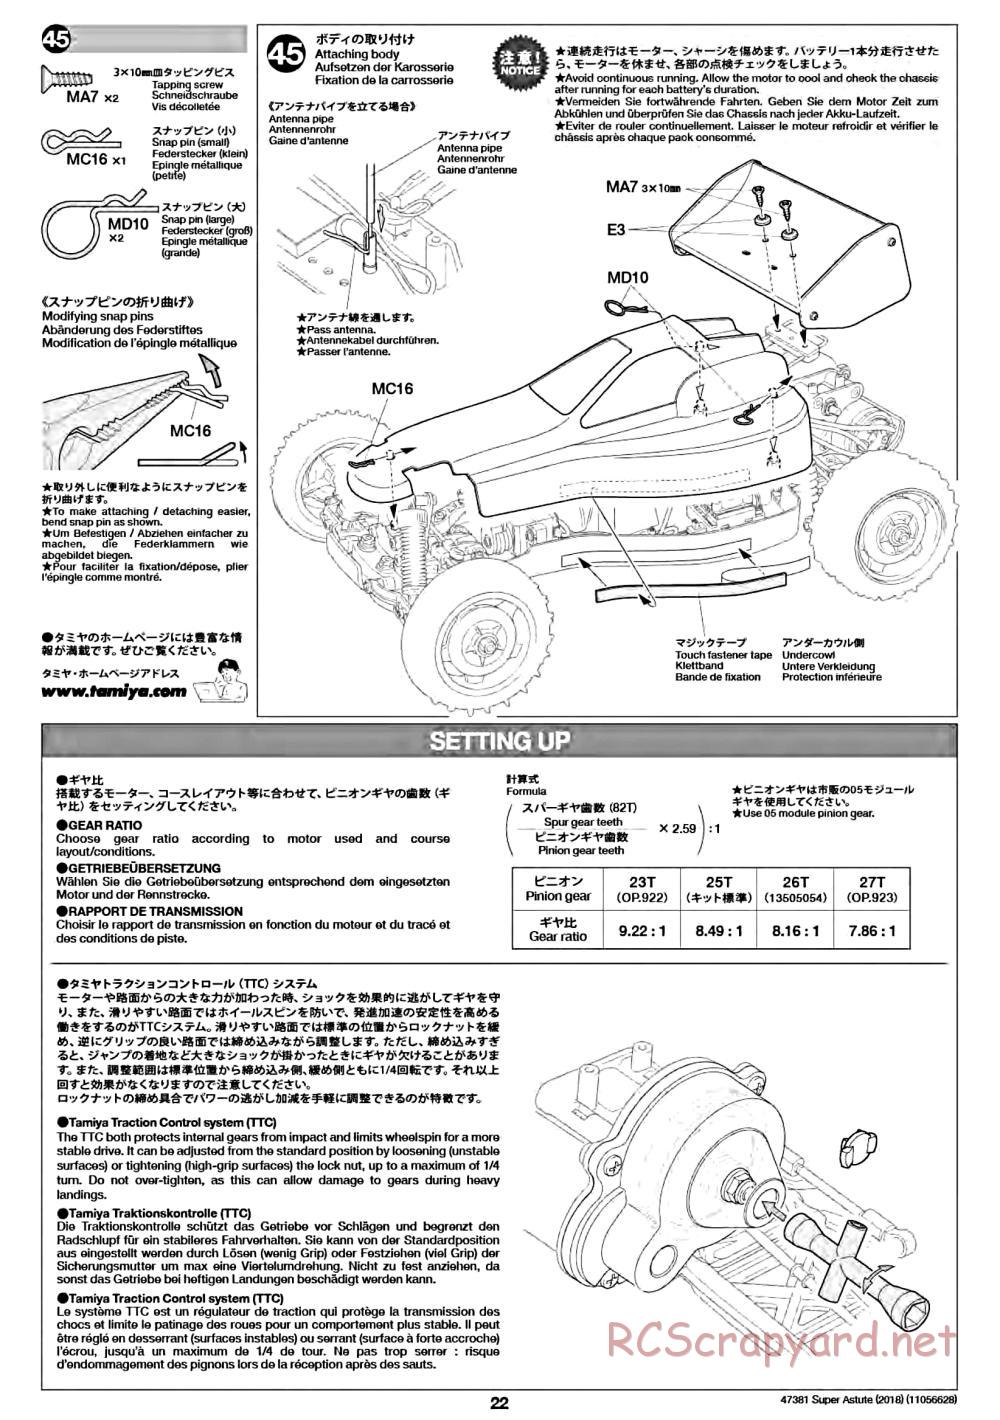 Tamiya - Super Astute (2018) Chassis - Manual - Page 22